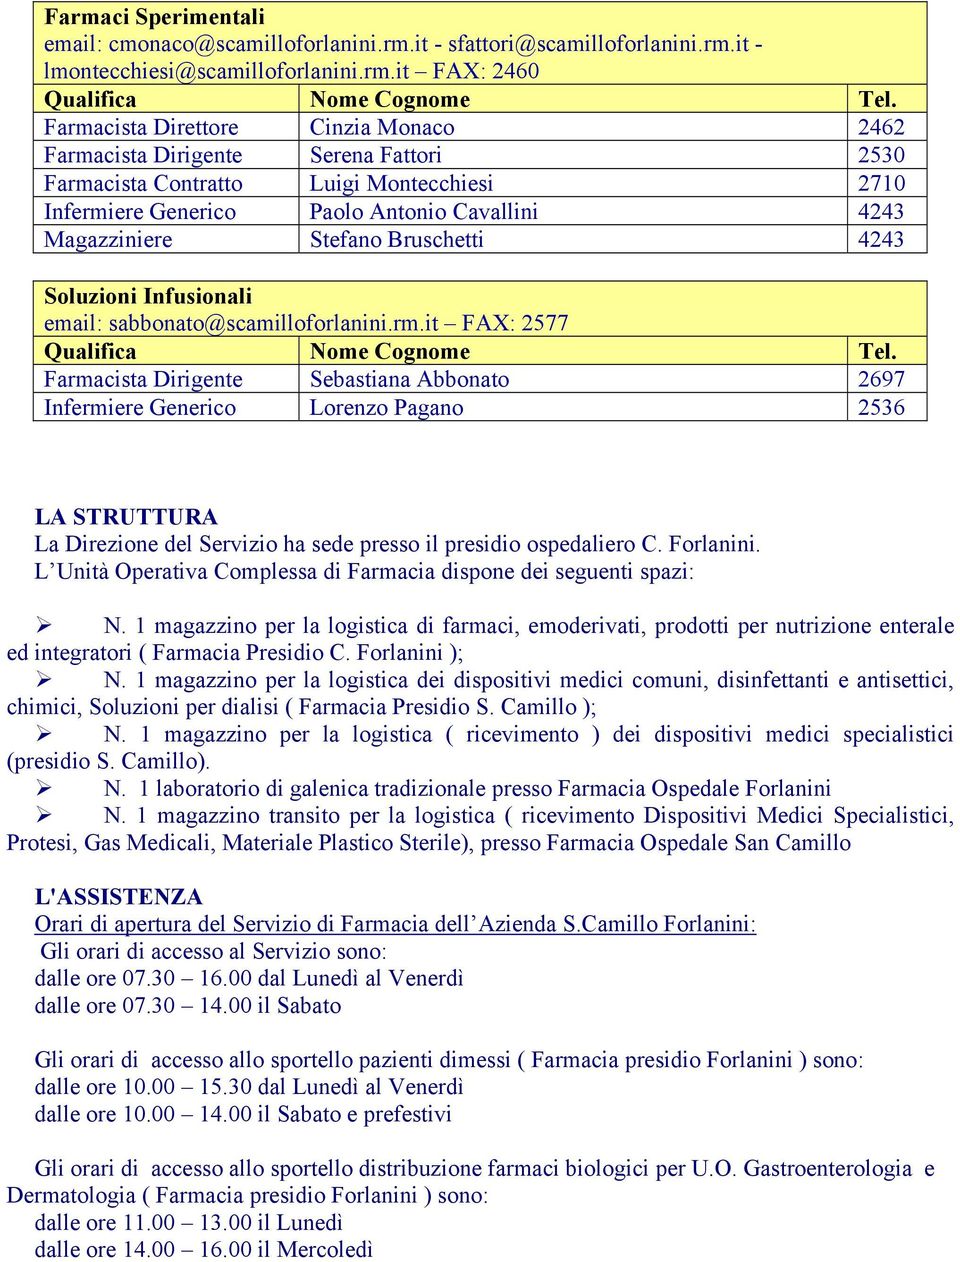 Unita Operativa Servizio Farmacia Pdf Free Download